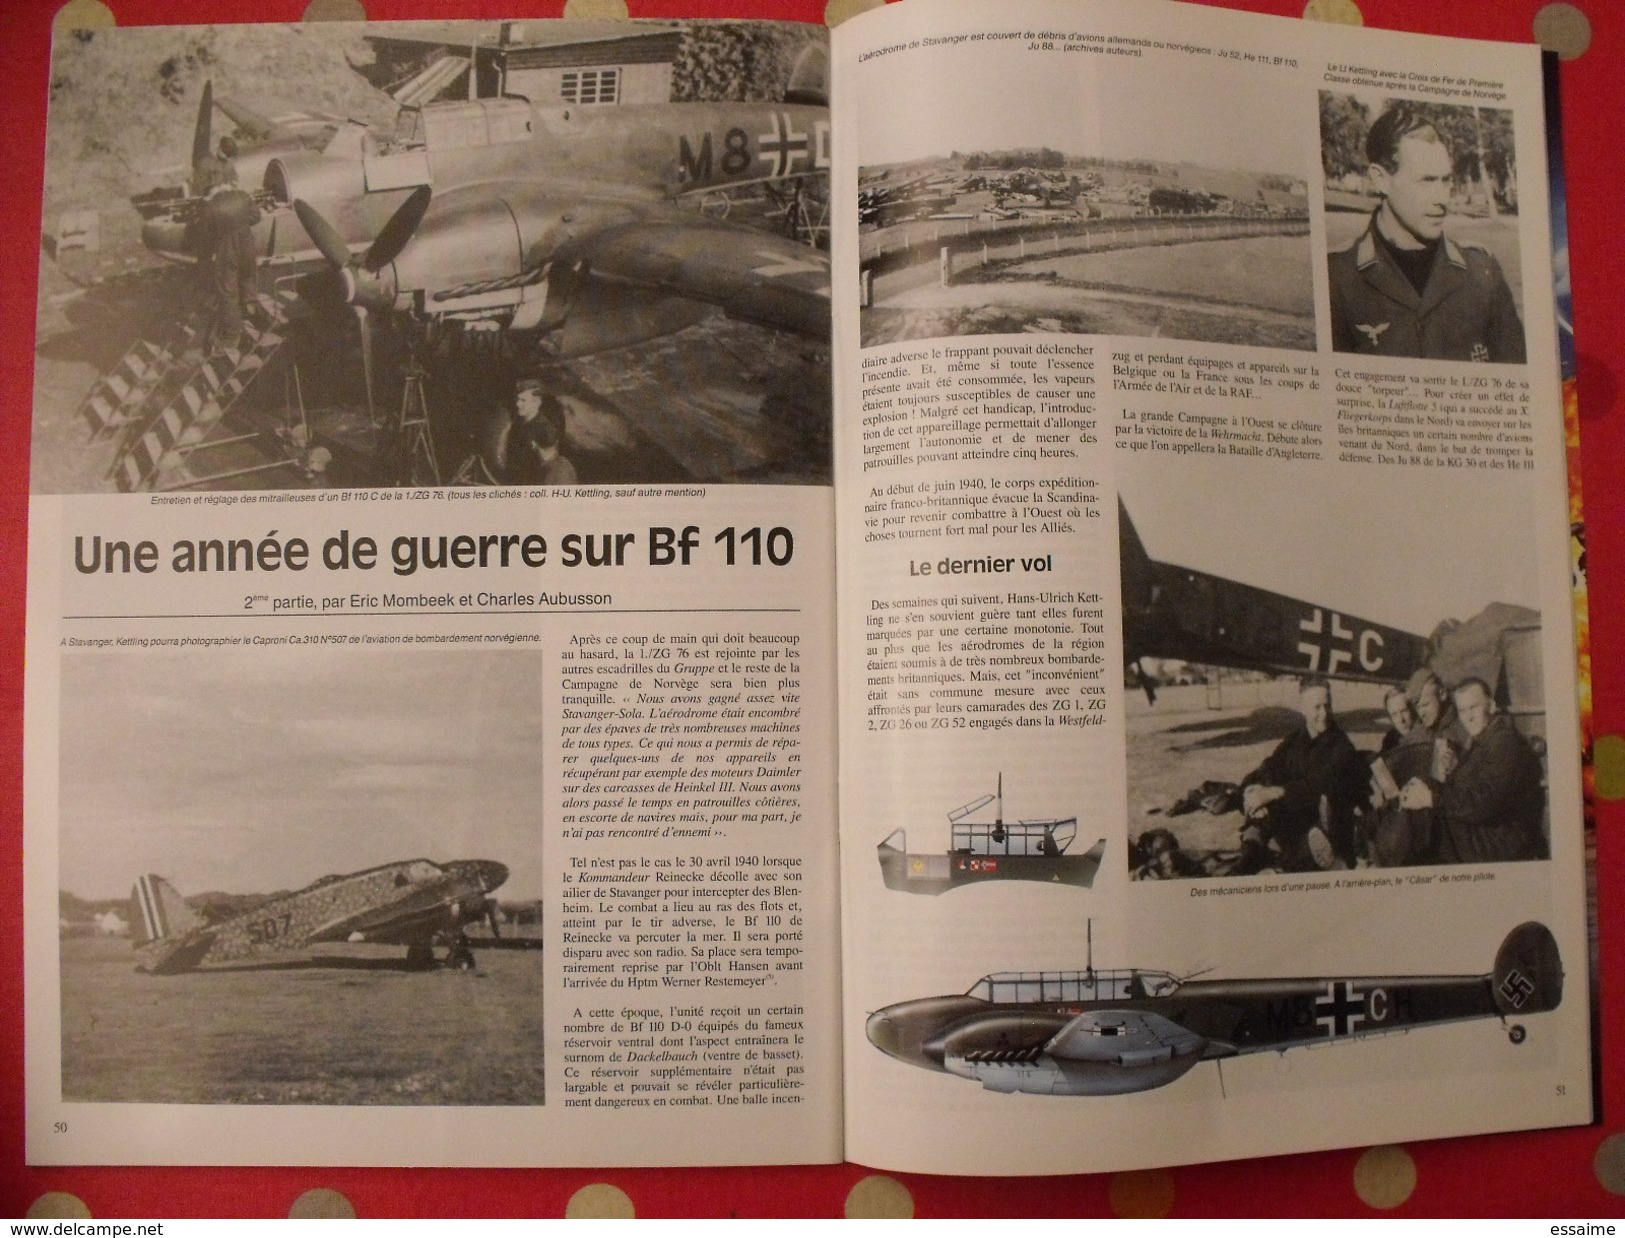 lot de 4 revues Avions. 2000-2001. toute l'aéronautique et son histoire. Aviation